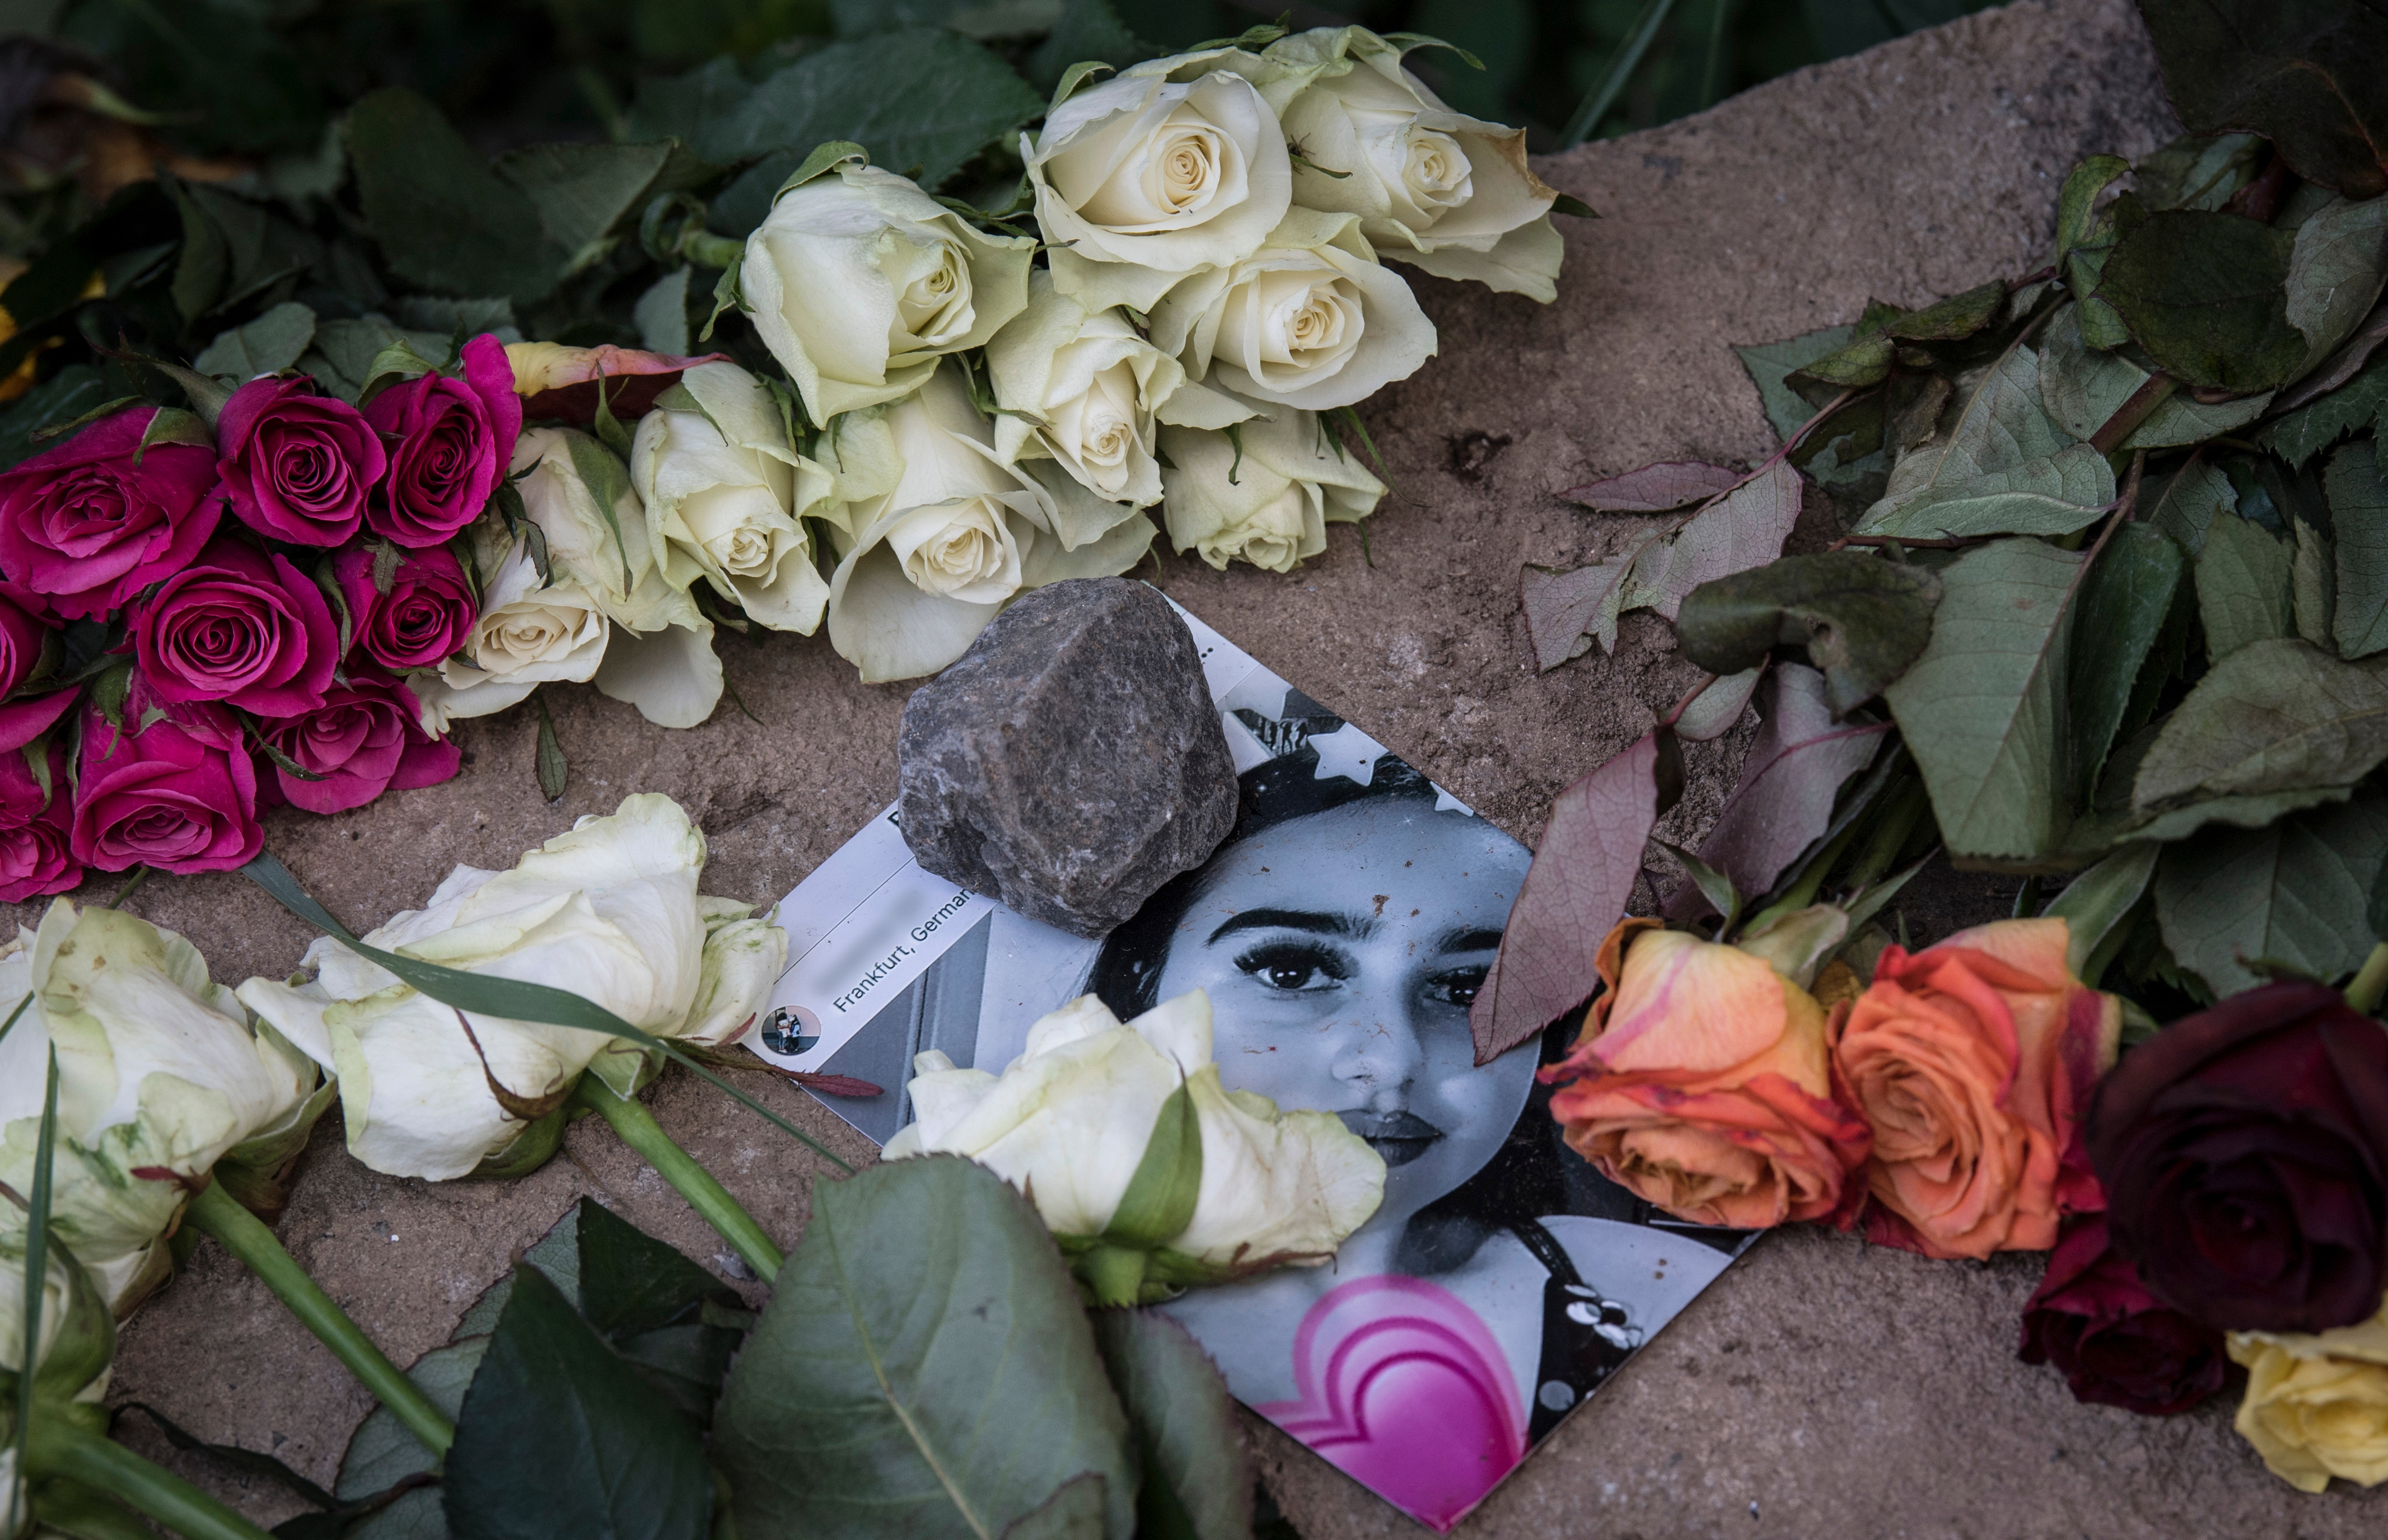 Beismerte a 14 éves lány meggyilkolását a 20 éves kurd férfi